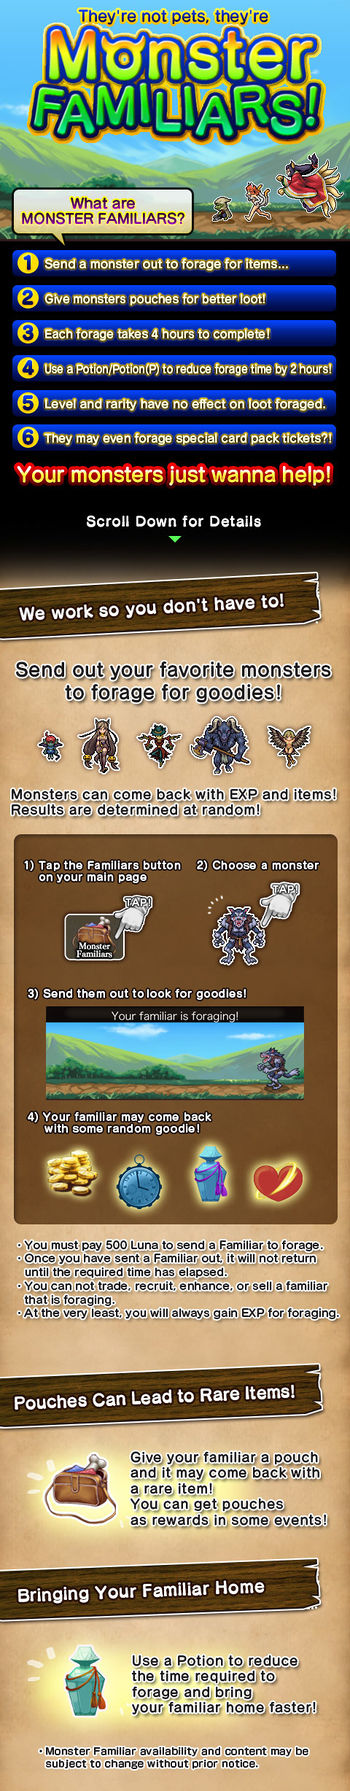 Monster Familiars 5 release.jpg